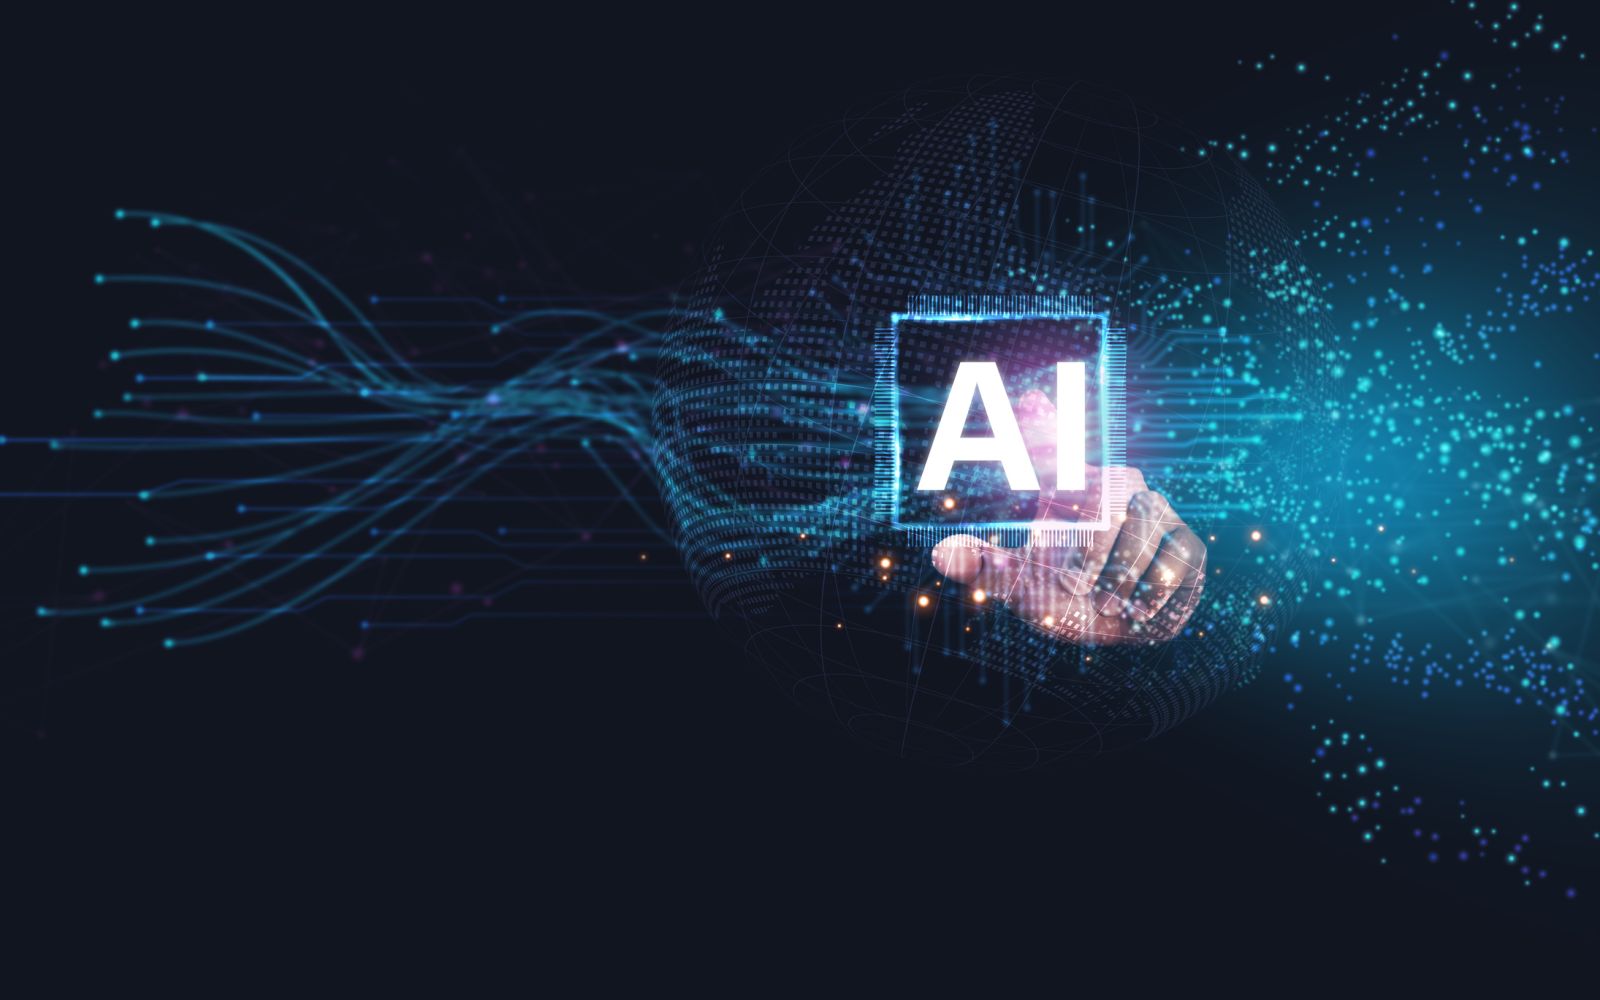 AI (artificial intelligence) - AI technology - by Wanan Yossingkum via iStock